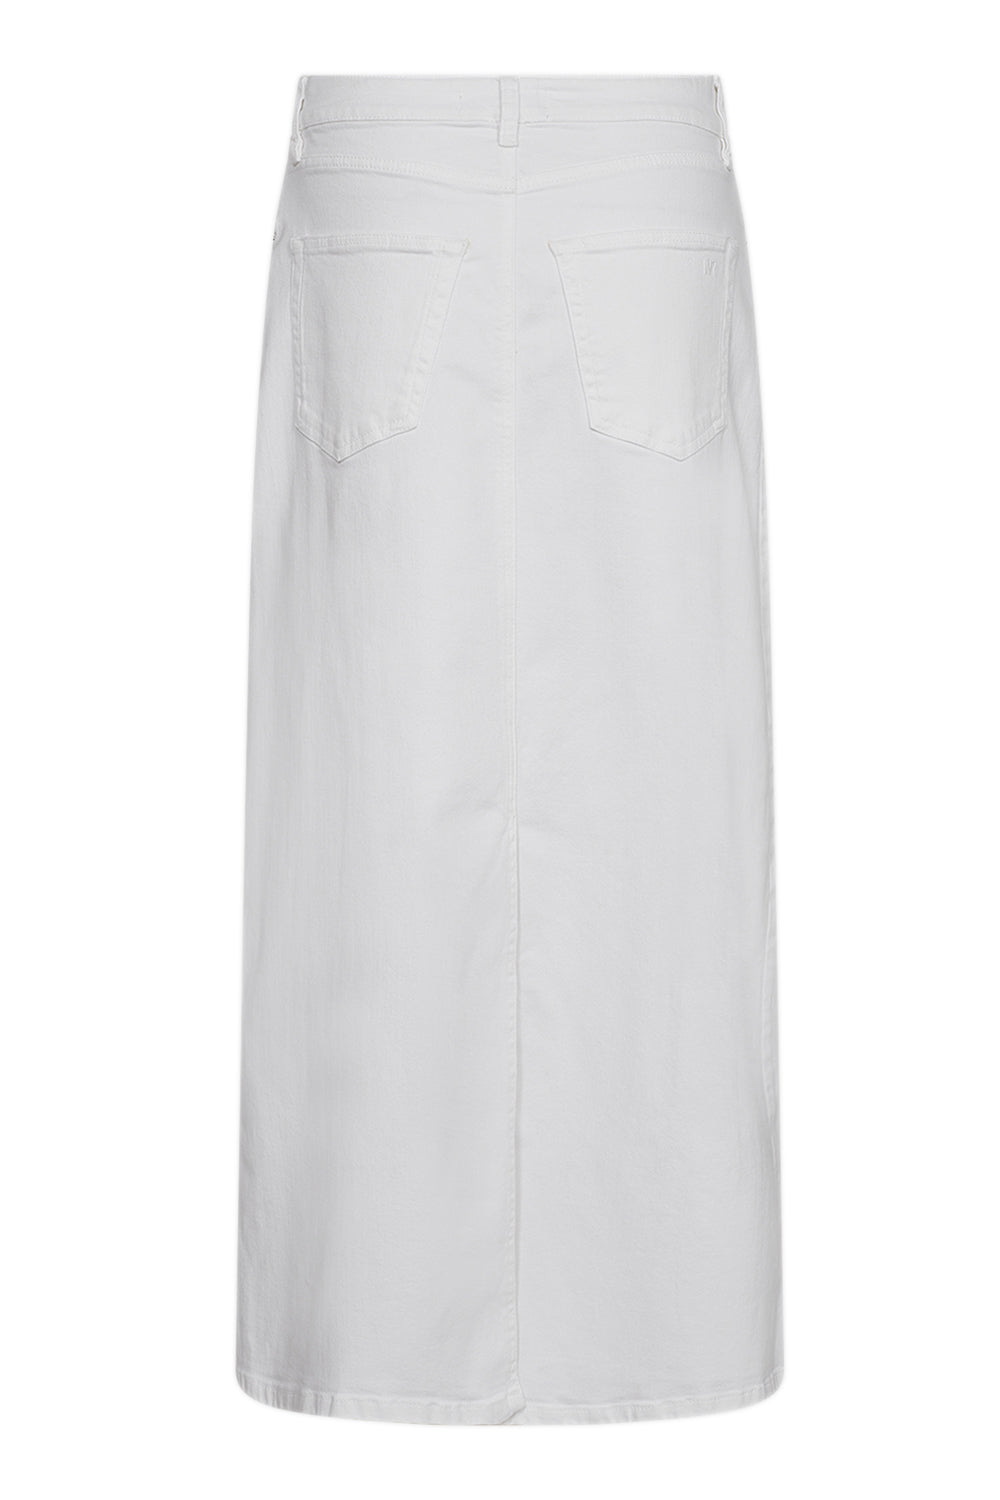 IVY Copenhagen IVY-Zoe Maxi Skirt White Skirt 01 White